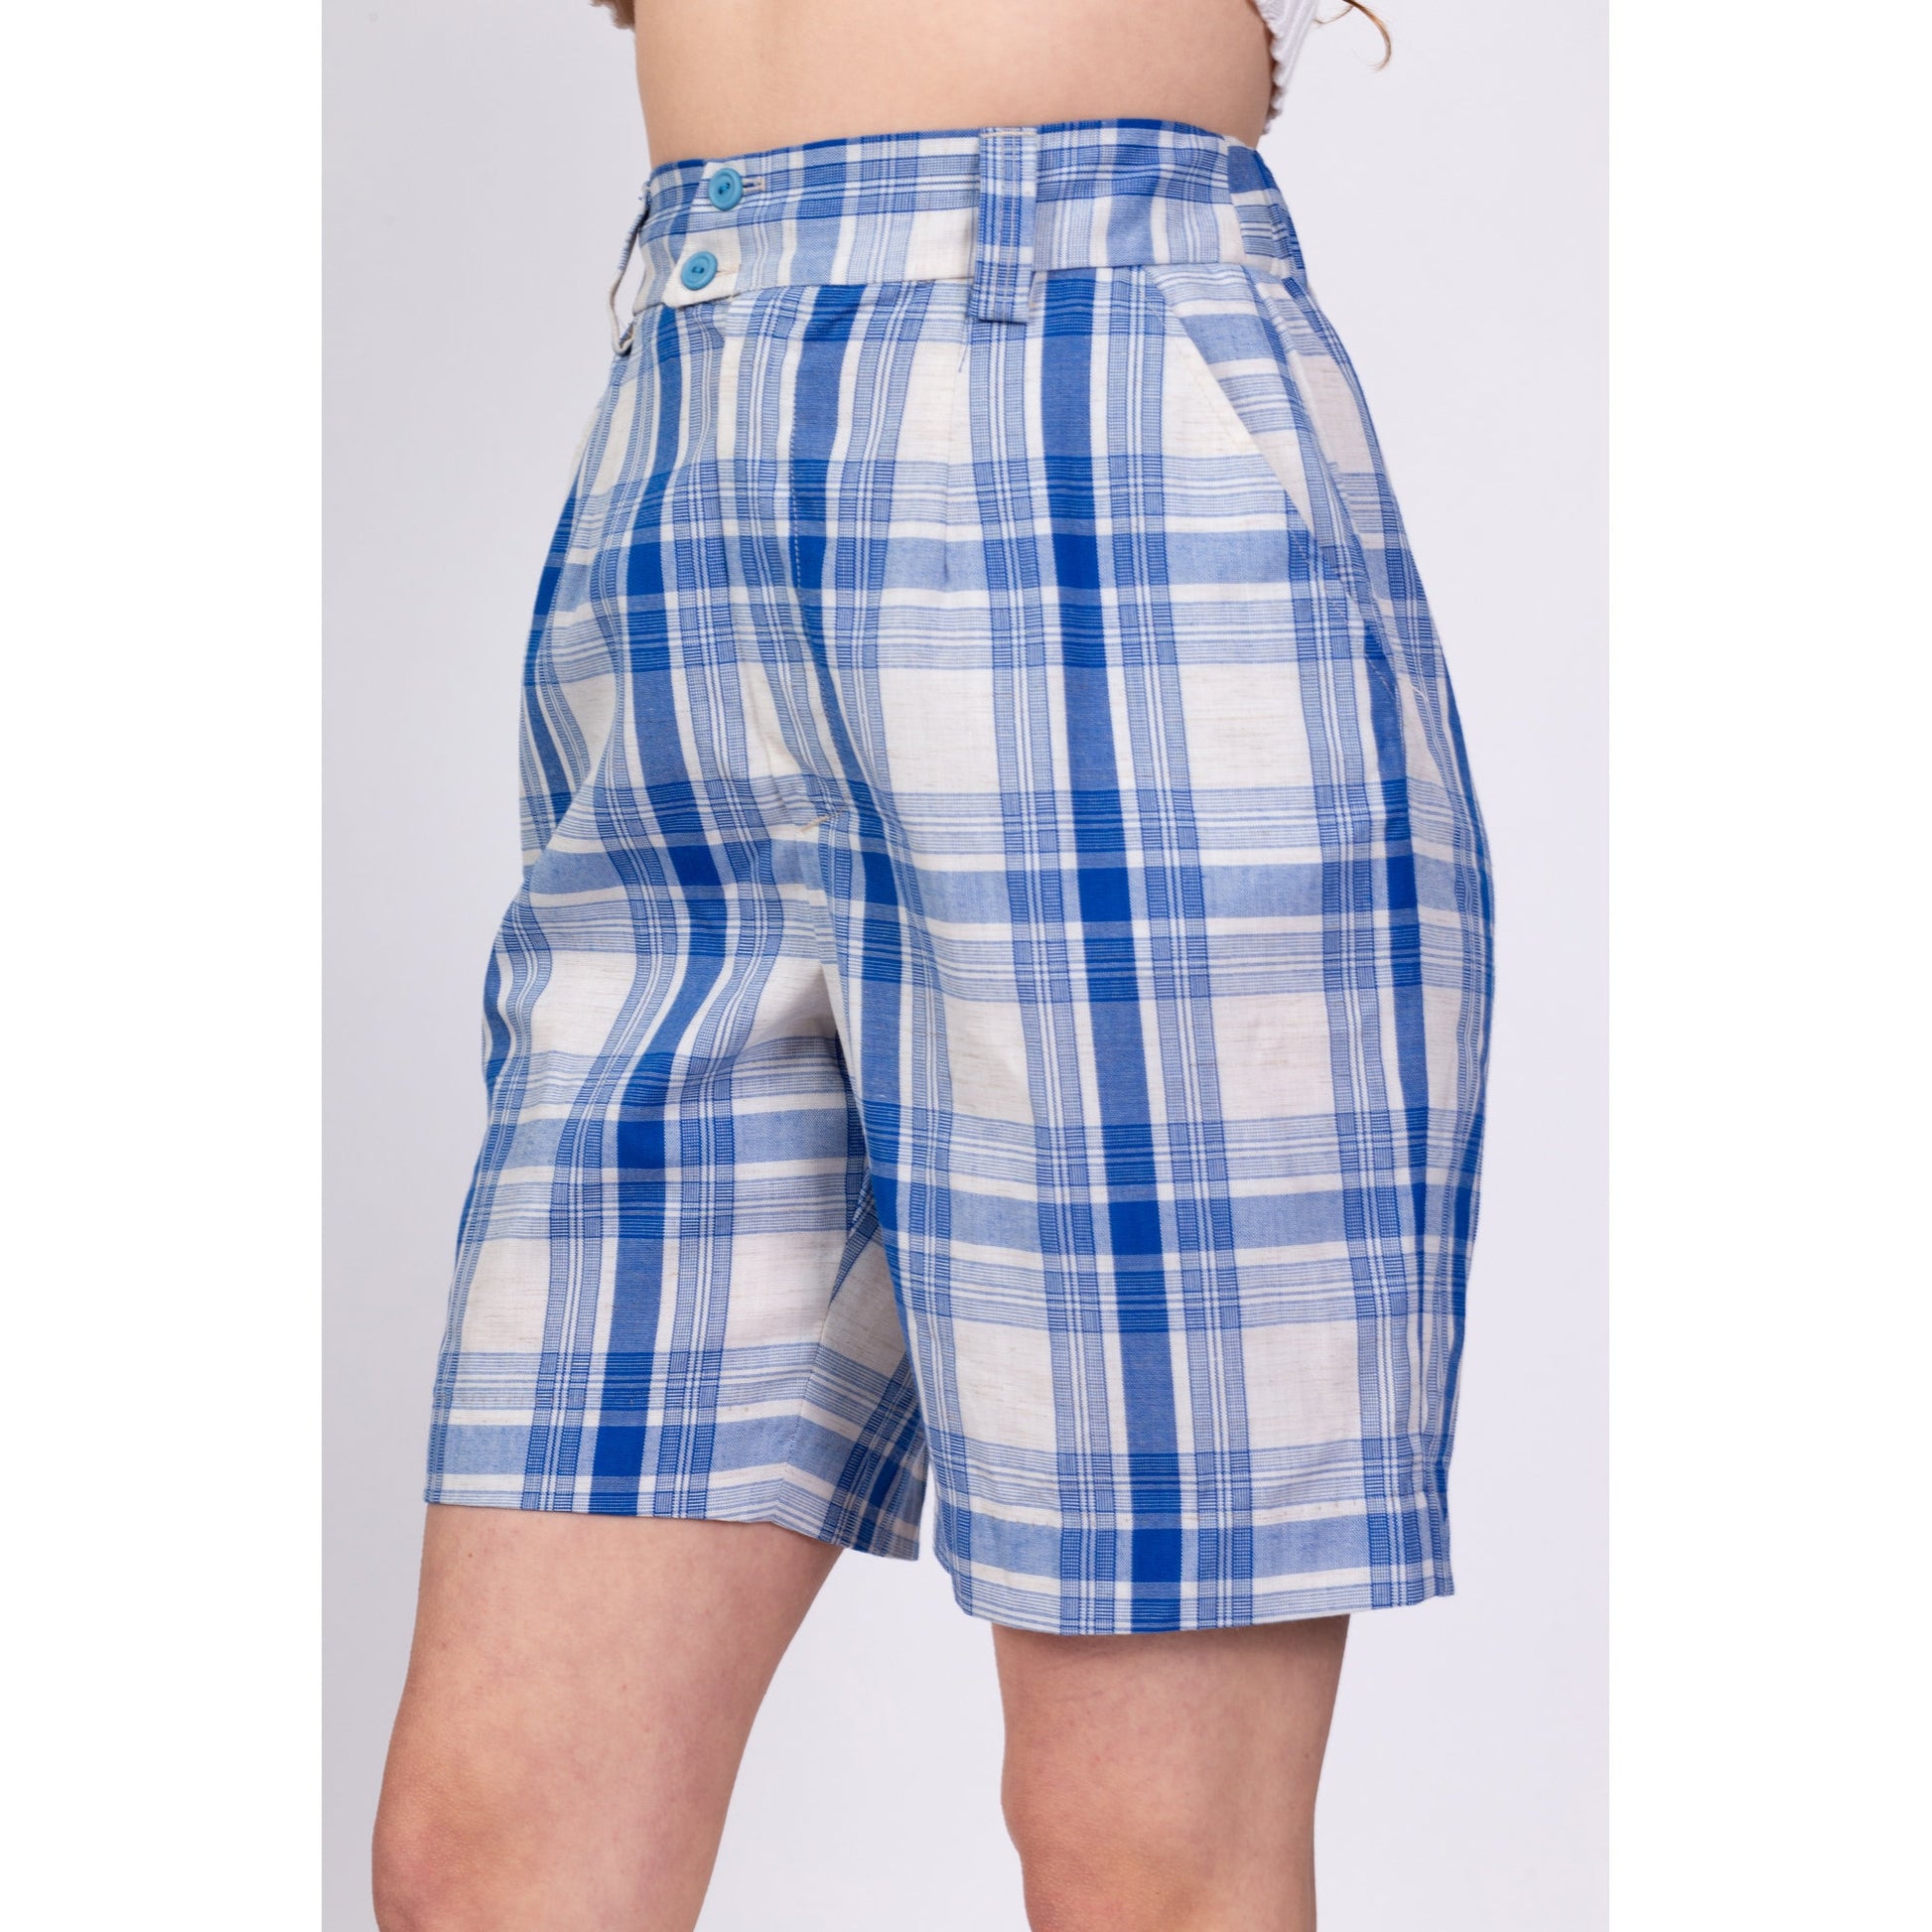 70s Blue & White Plaid Shorts - Medium